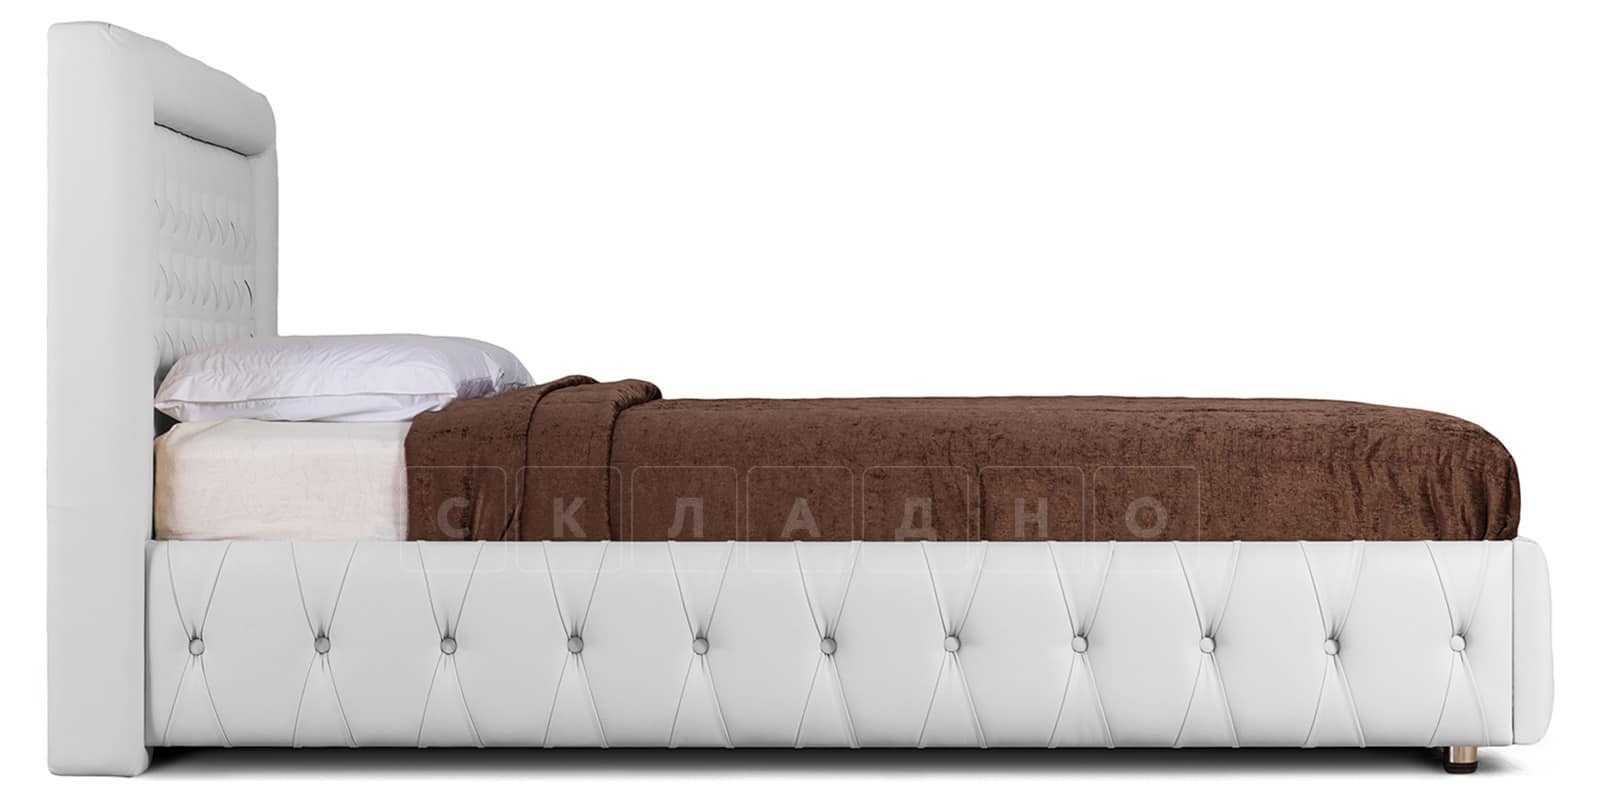 Мягкая кровать Малибу 160 см экокожа белого цвета вариант 7 фото 3 | интернет-магазин Складно